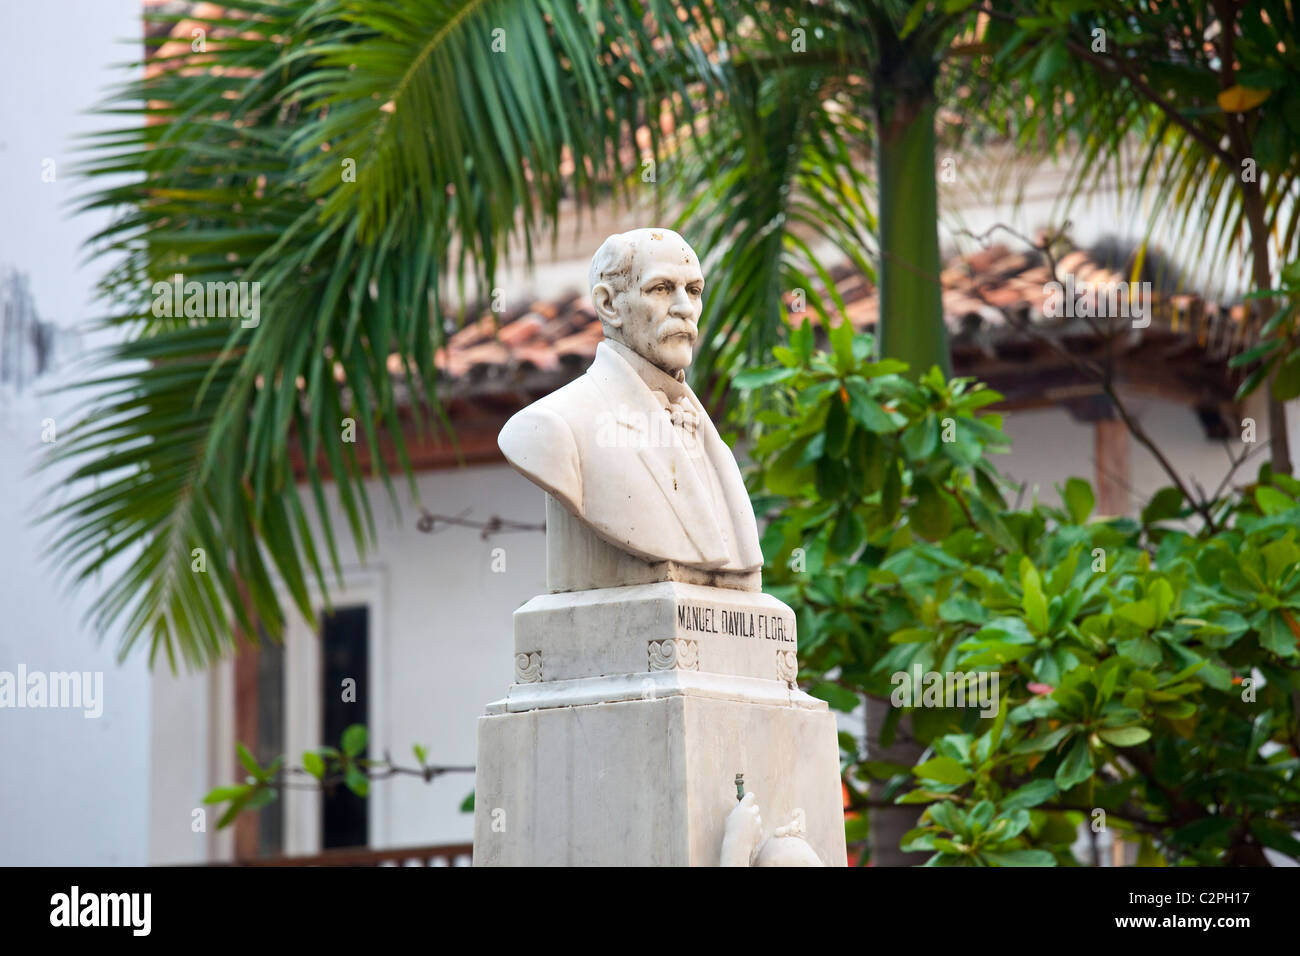 Statua di Manuel Davila Florez nella città vecchia, Cartagena, Colombia Foto Stock